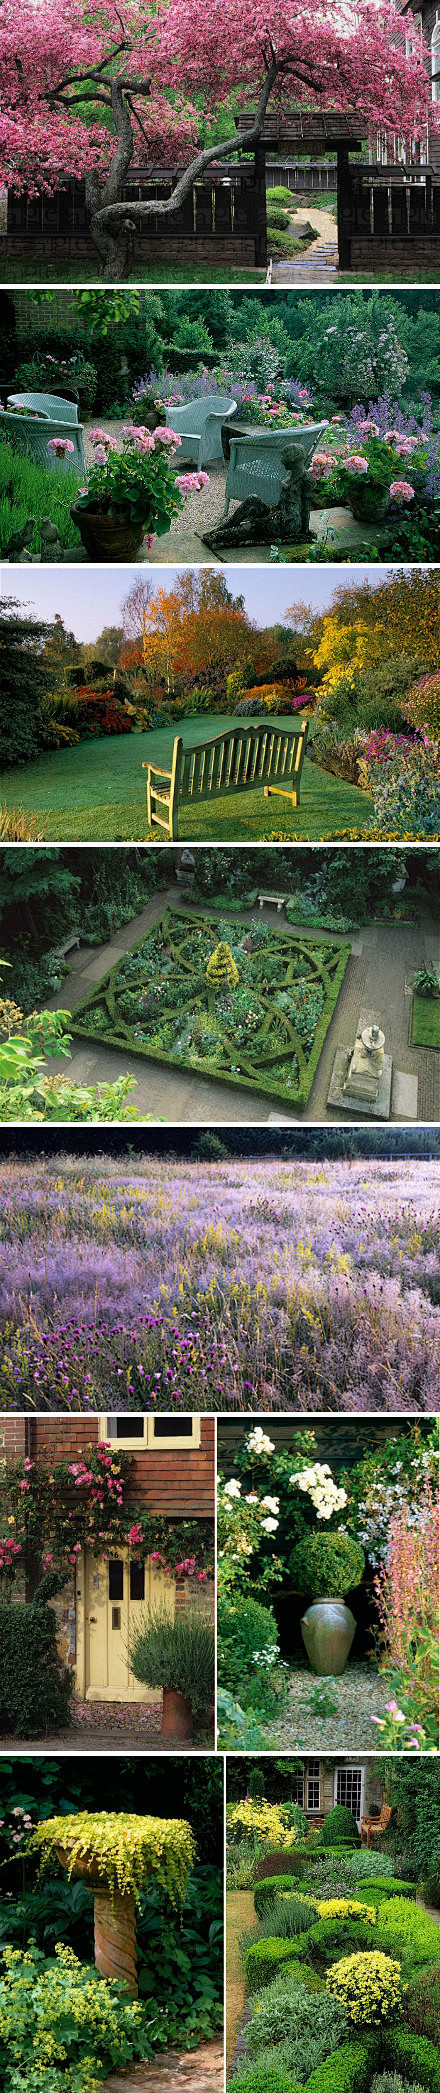 【英式乡村花园】在英国花园摄影行业中也是...